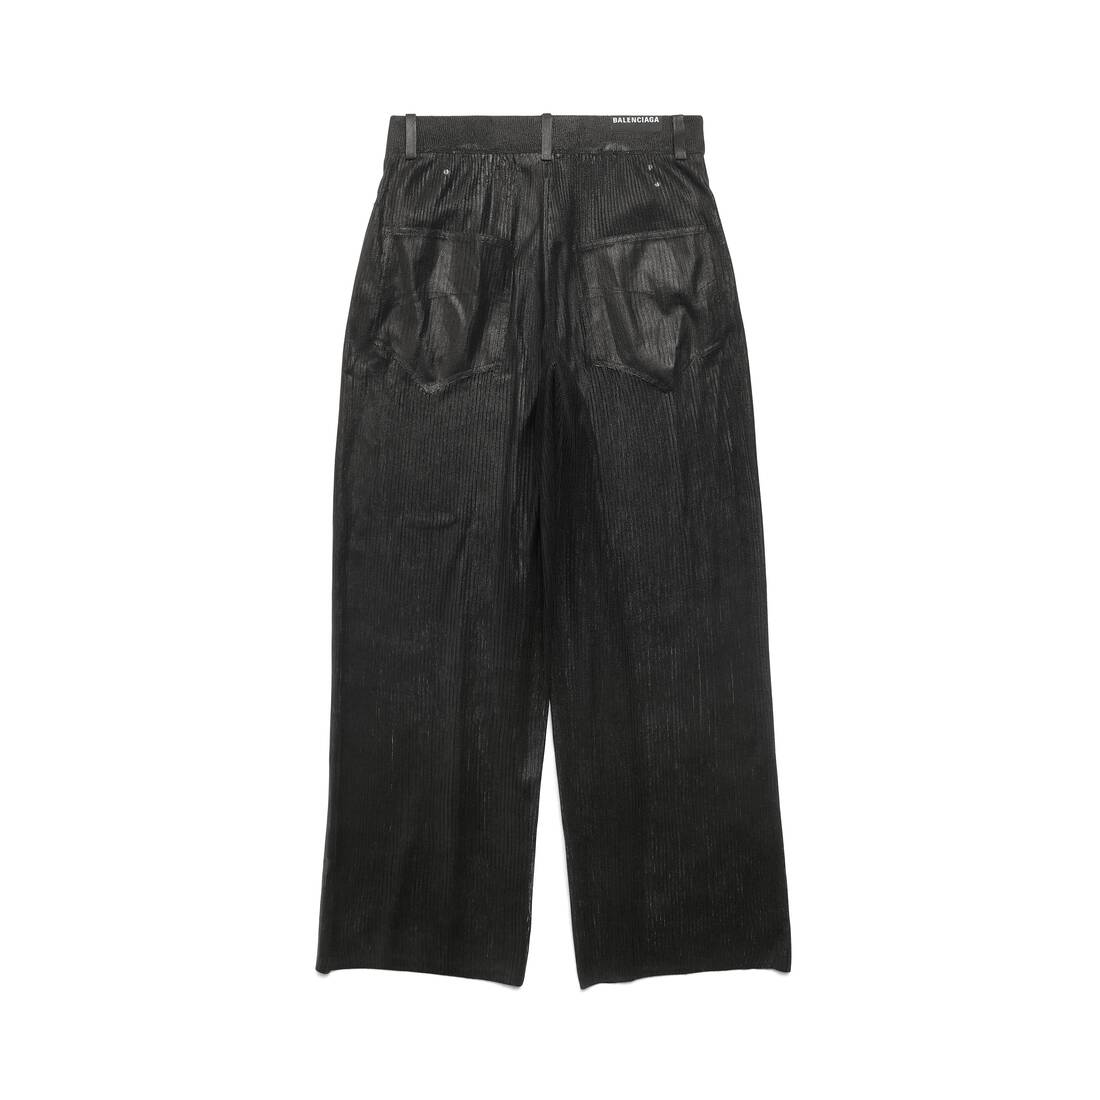 Balenciaga Leather Pants, Iconic, Size 38FR, skinny | eBay